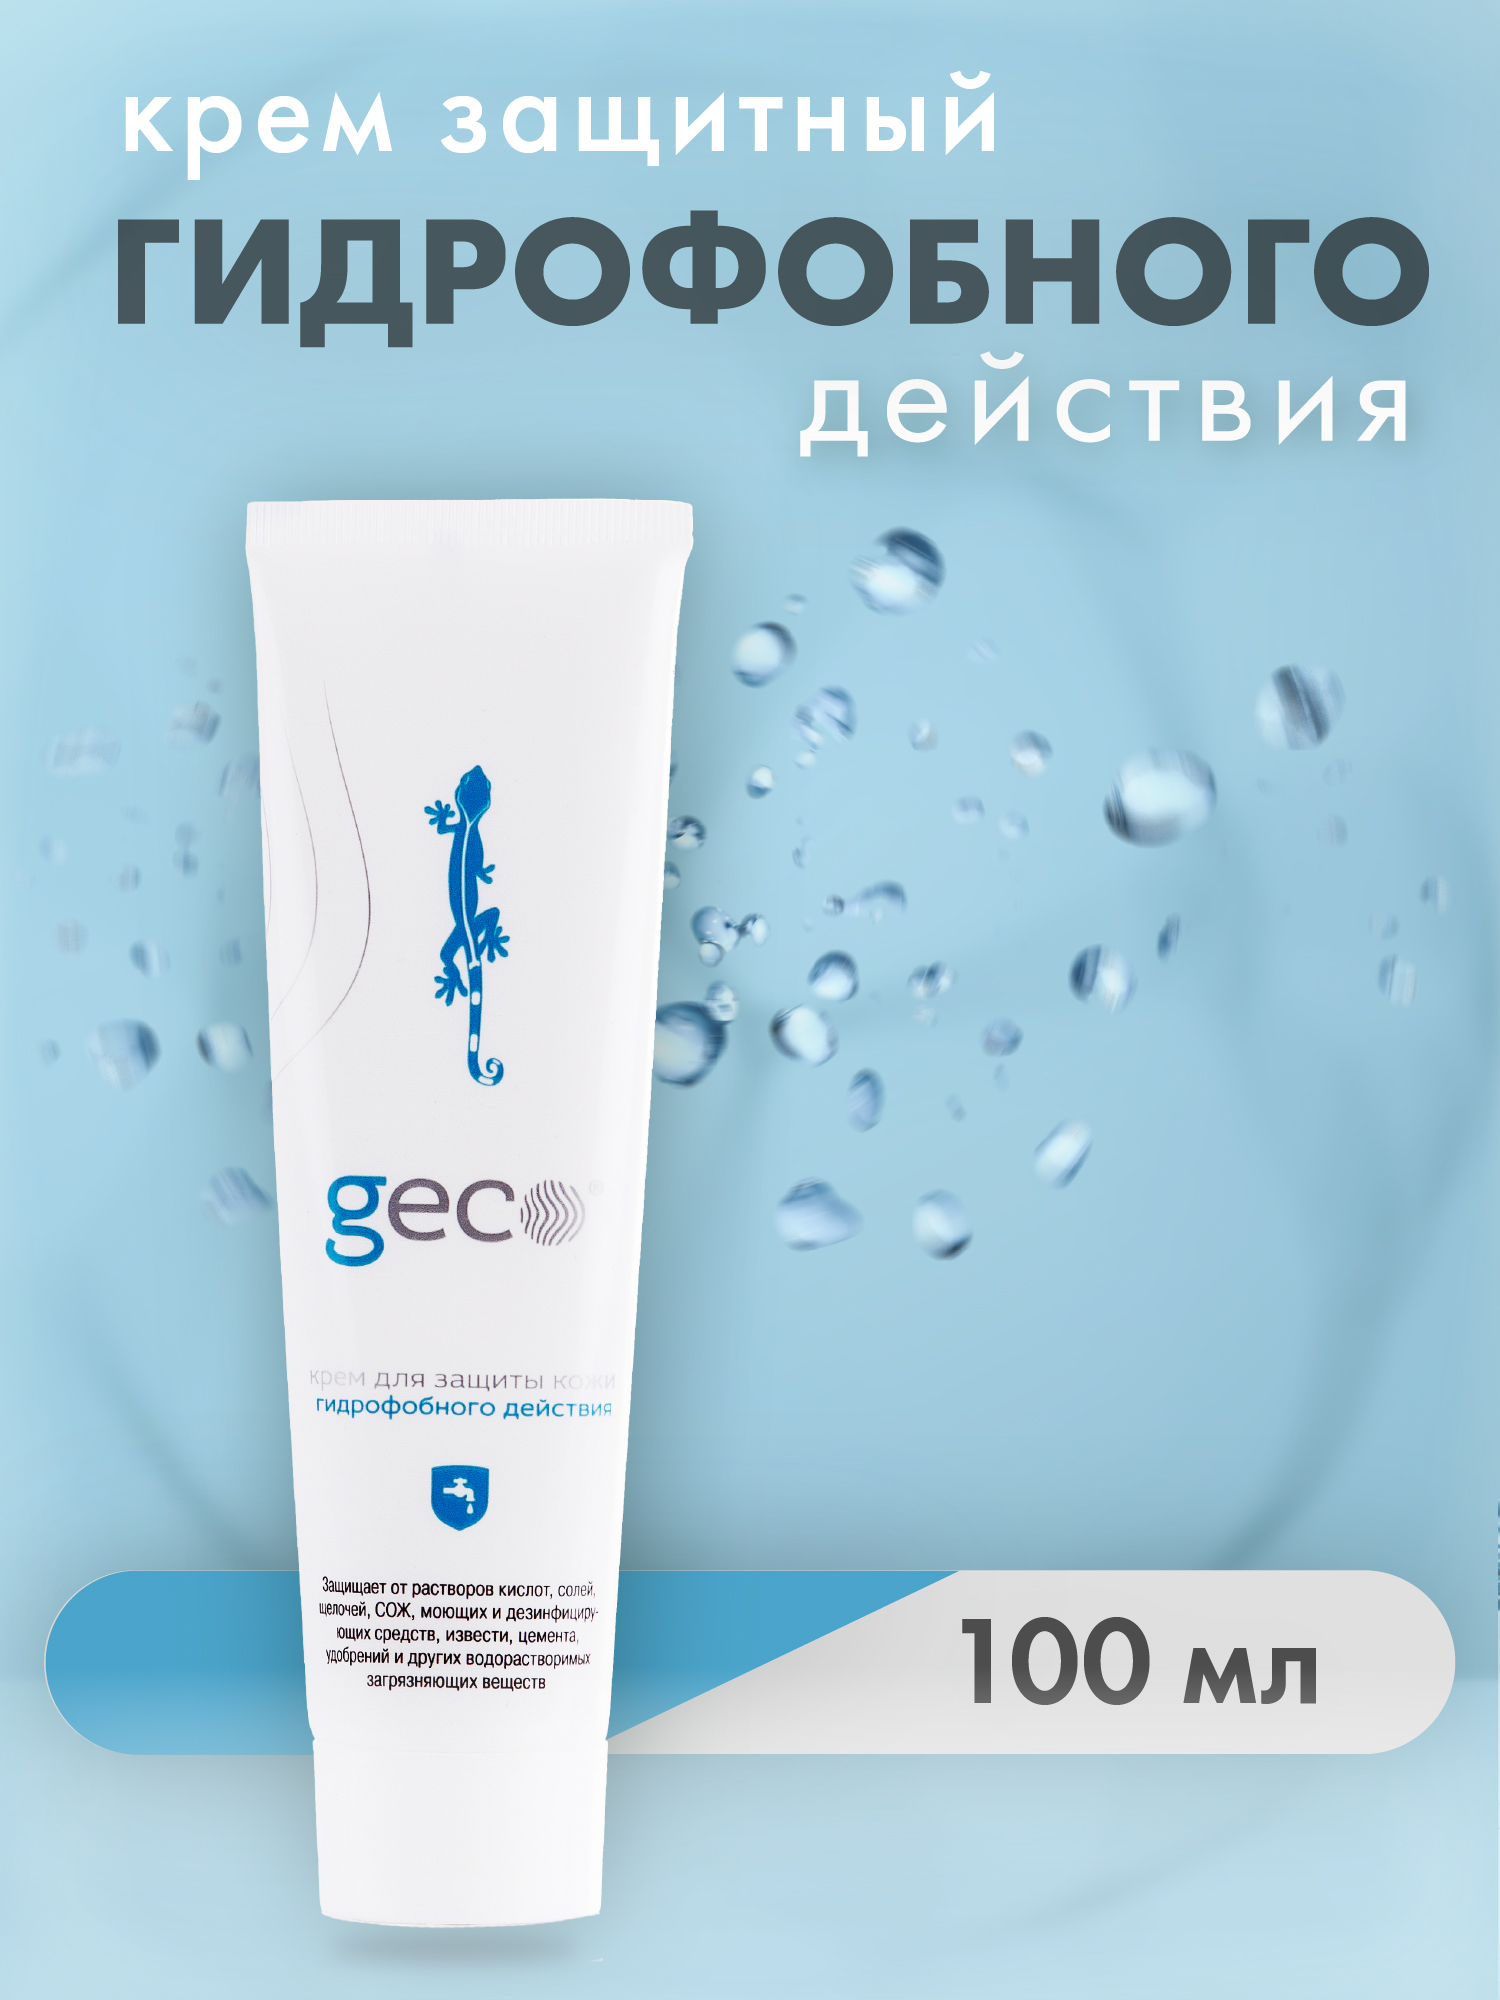 Крем гидрофобного действия GECO  для защиты кожи рук  туба с винтовой крышкой 100 мл белобаза крем туба 100мл хорватия